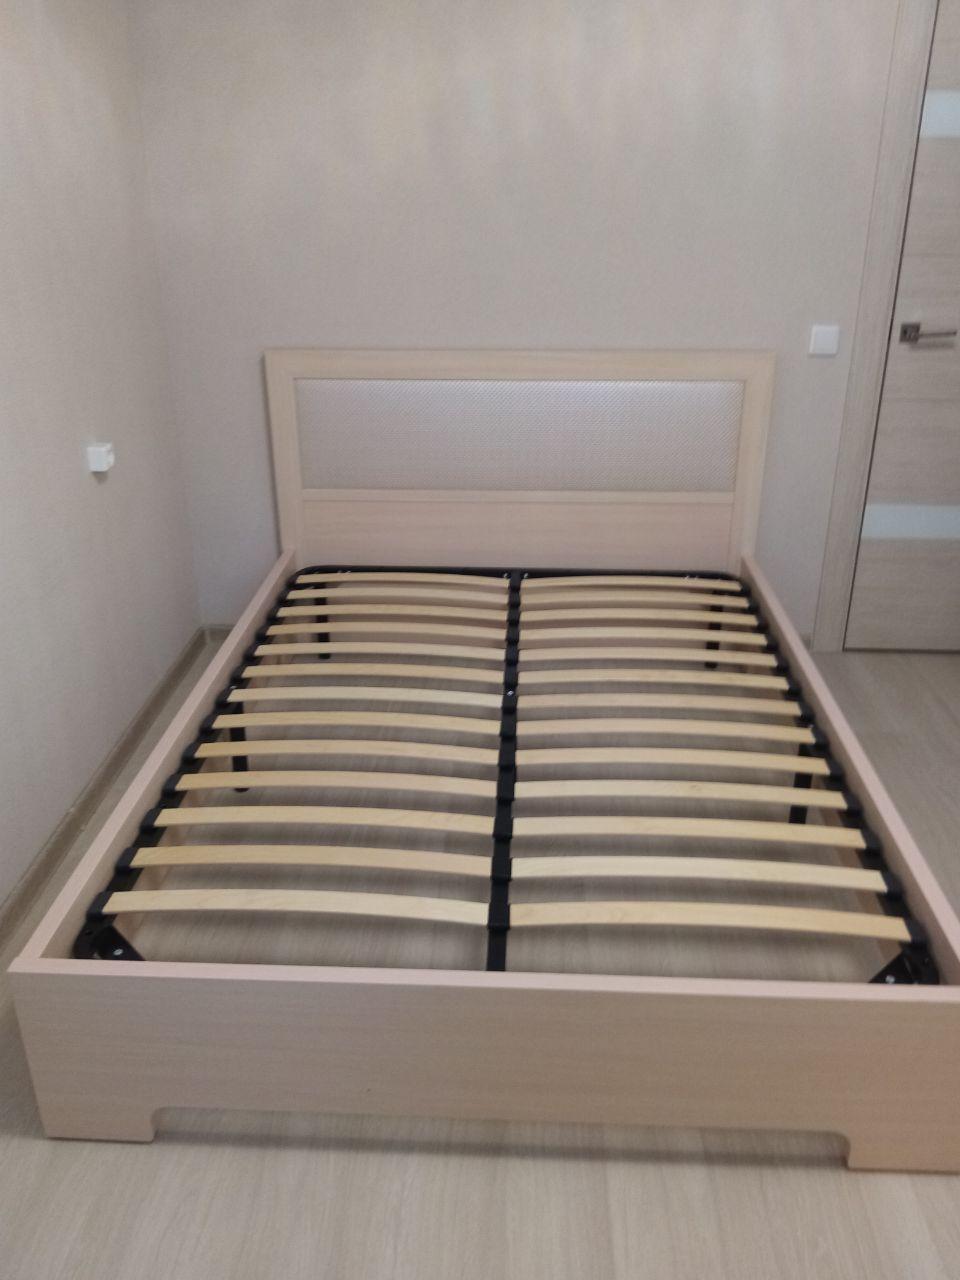 Полутораспальная кровать "Мальта" 120 х 190 с подъемным механизмом цвет венге